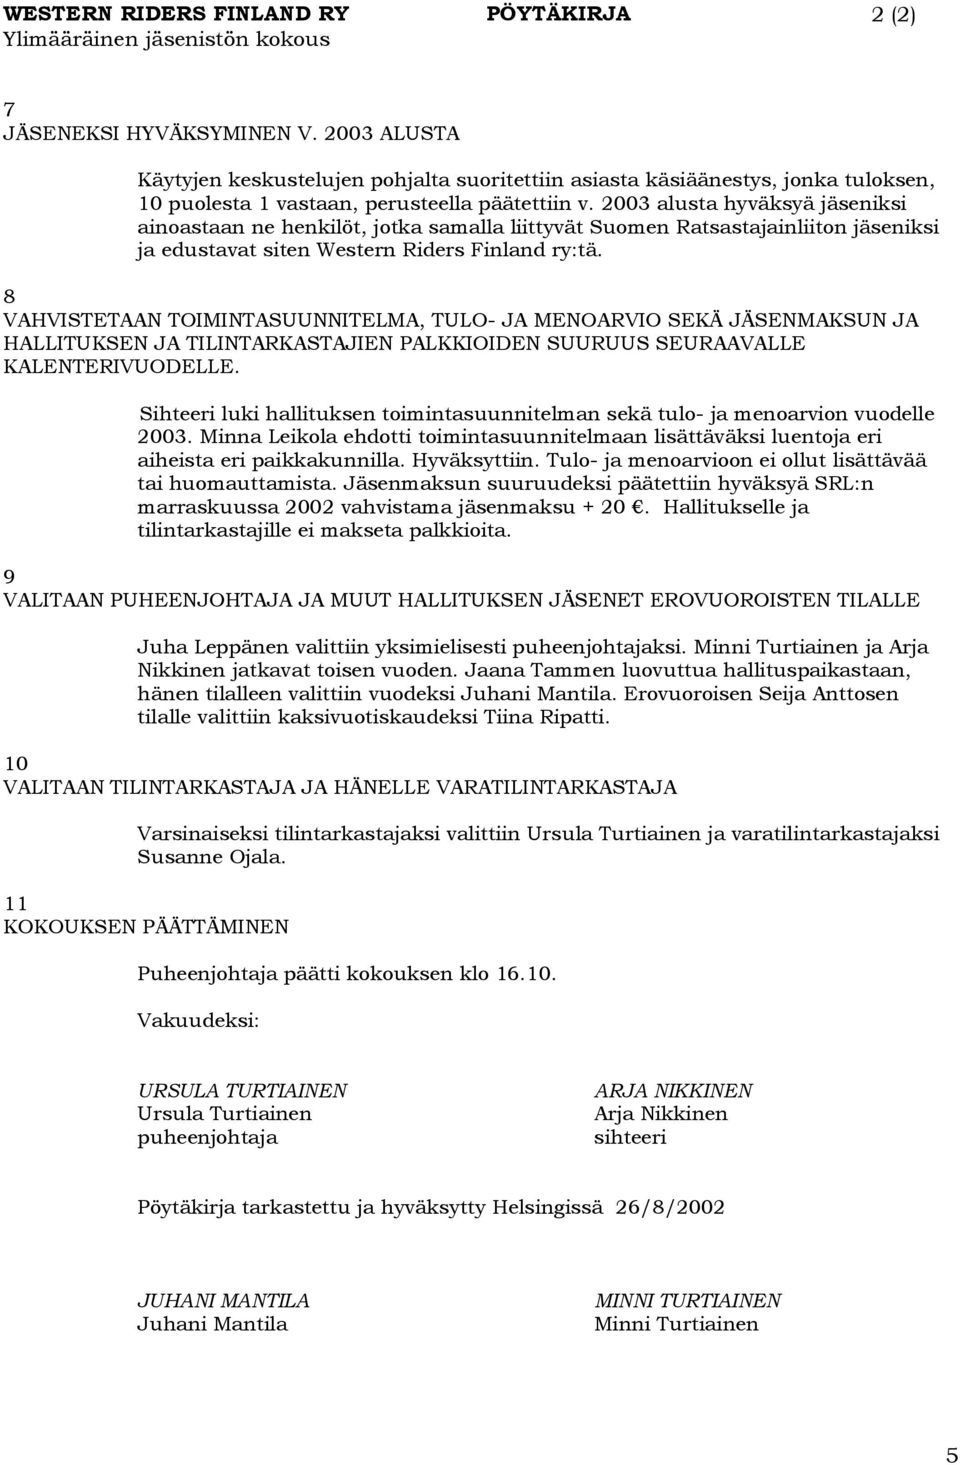 2003 alusta hyväksyä jäseniksi ainoastaan ne henkilöt, jotka samalla liittyvät Suomen Ratsastajainliiton jäseniksi ja edustavat siten Western Riders Finland ry:tä.